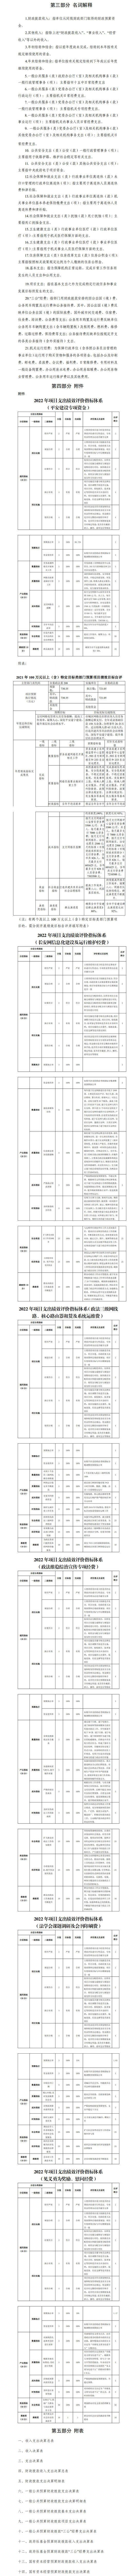 中共遂宁市委政法委员会2021年部门决算公开本级_2.png